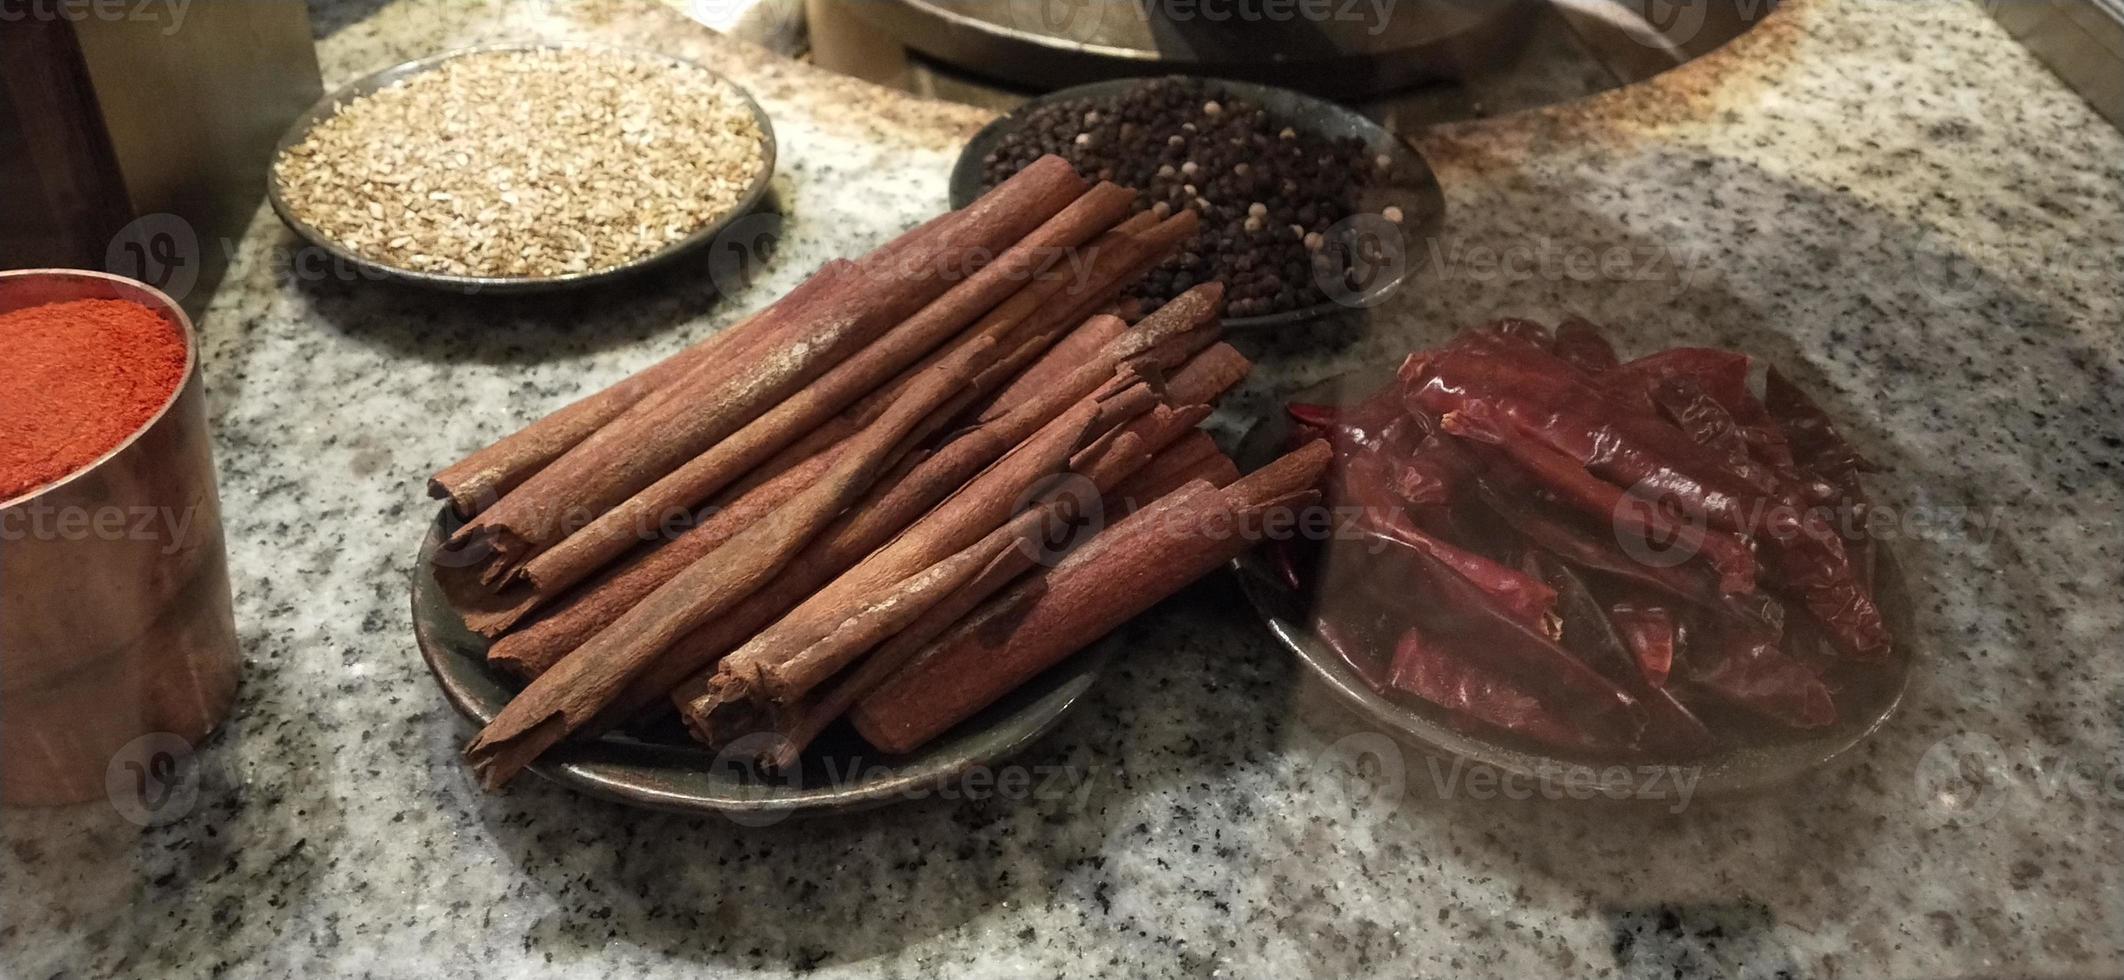 foton av kryddor kryddor indiska köket